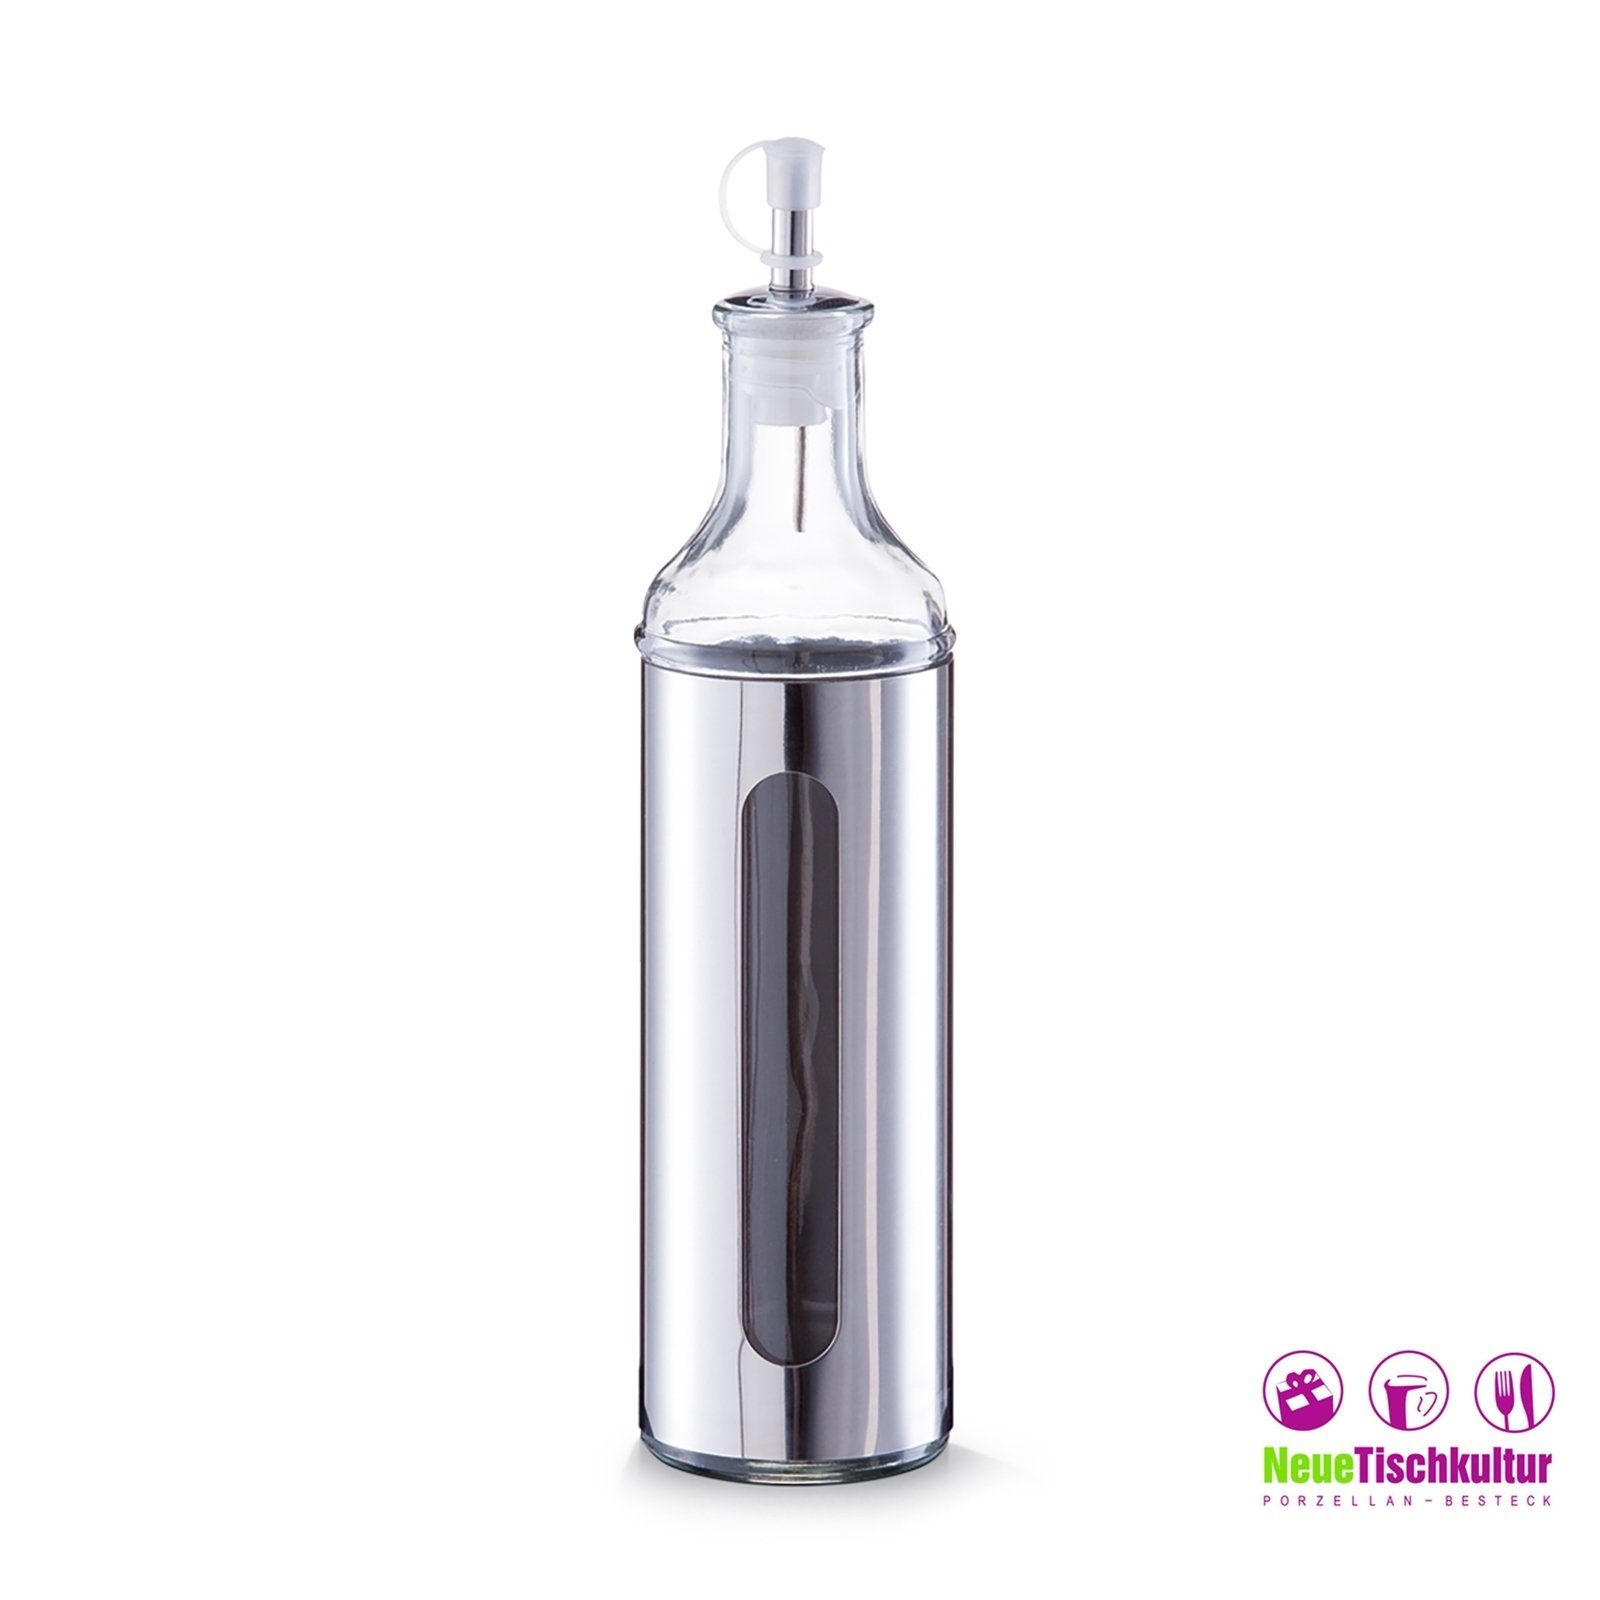 Neuetischkultur Vorratsglas Essig-/Ölflasche, 500 ml Edelstahl Glas, Edelstahl